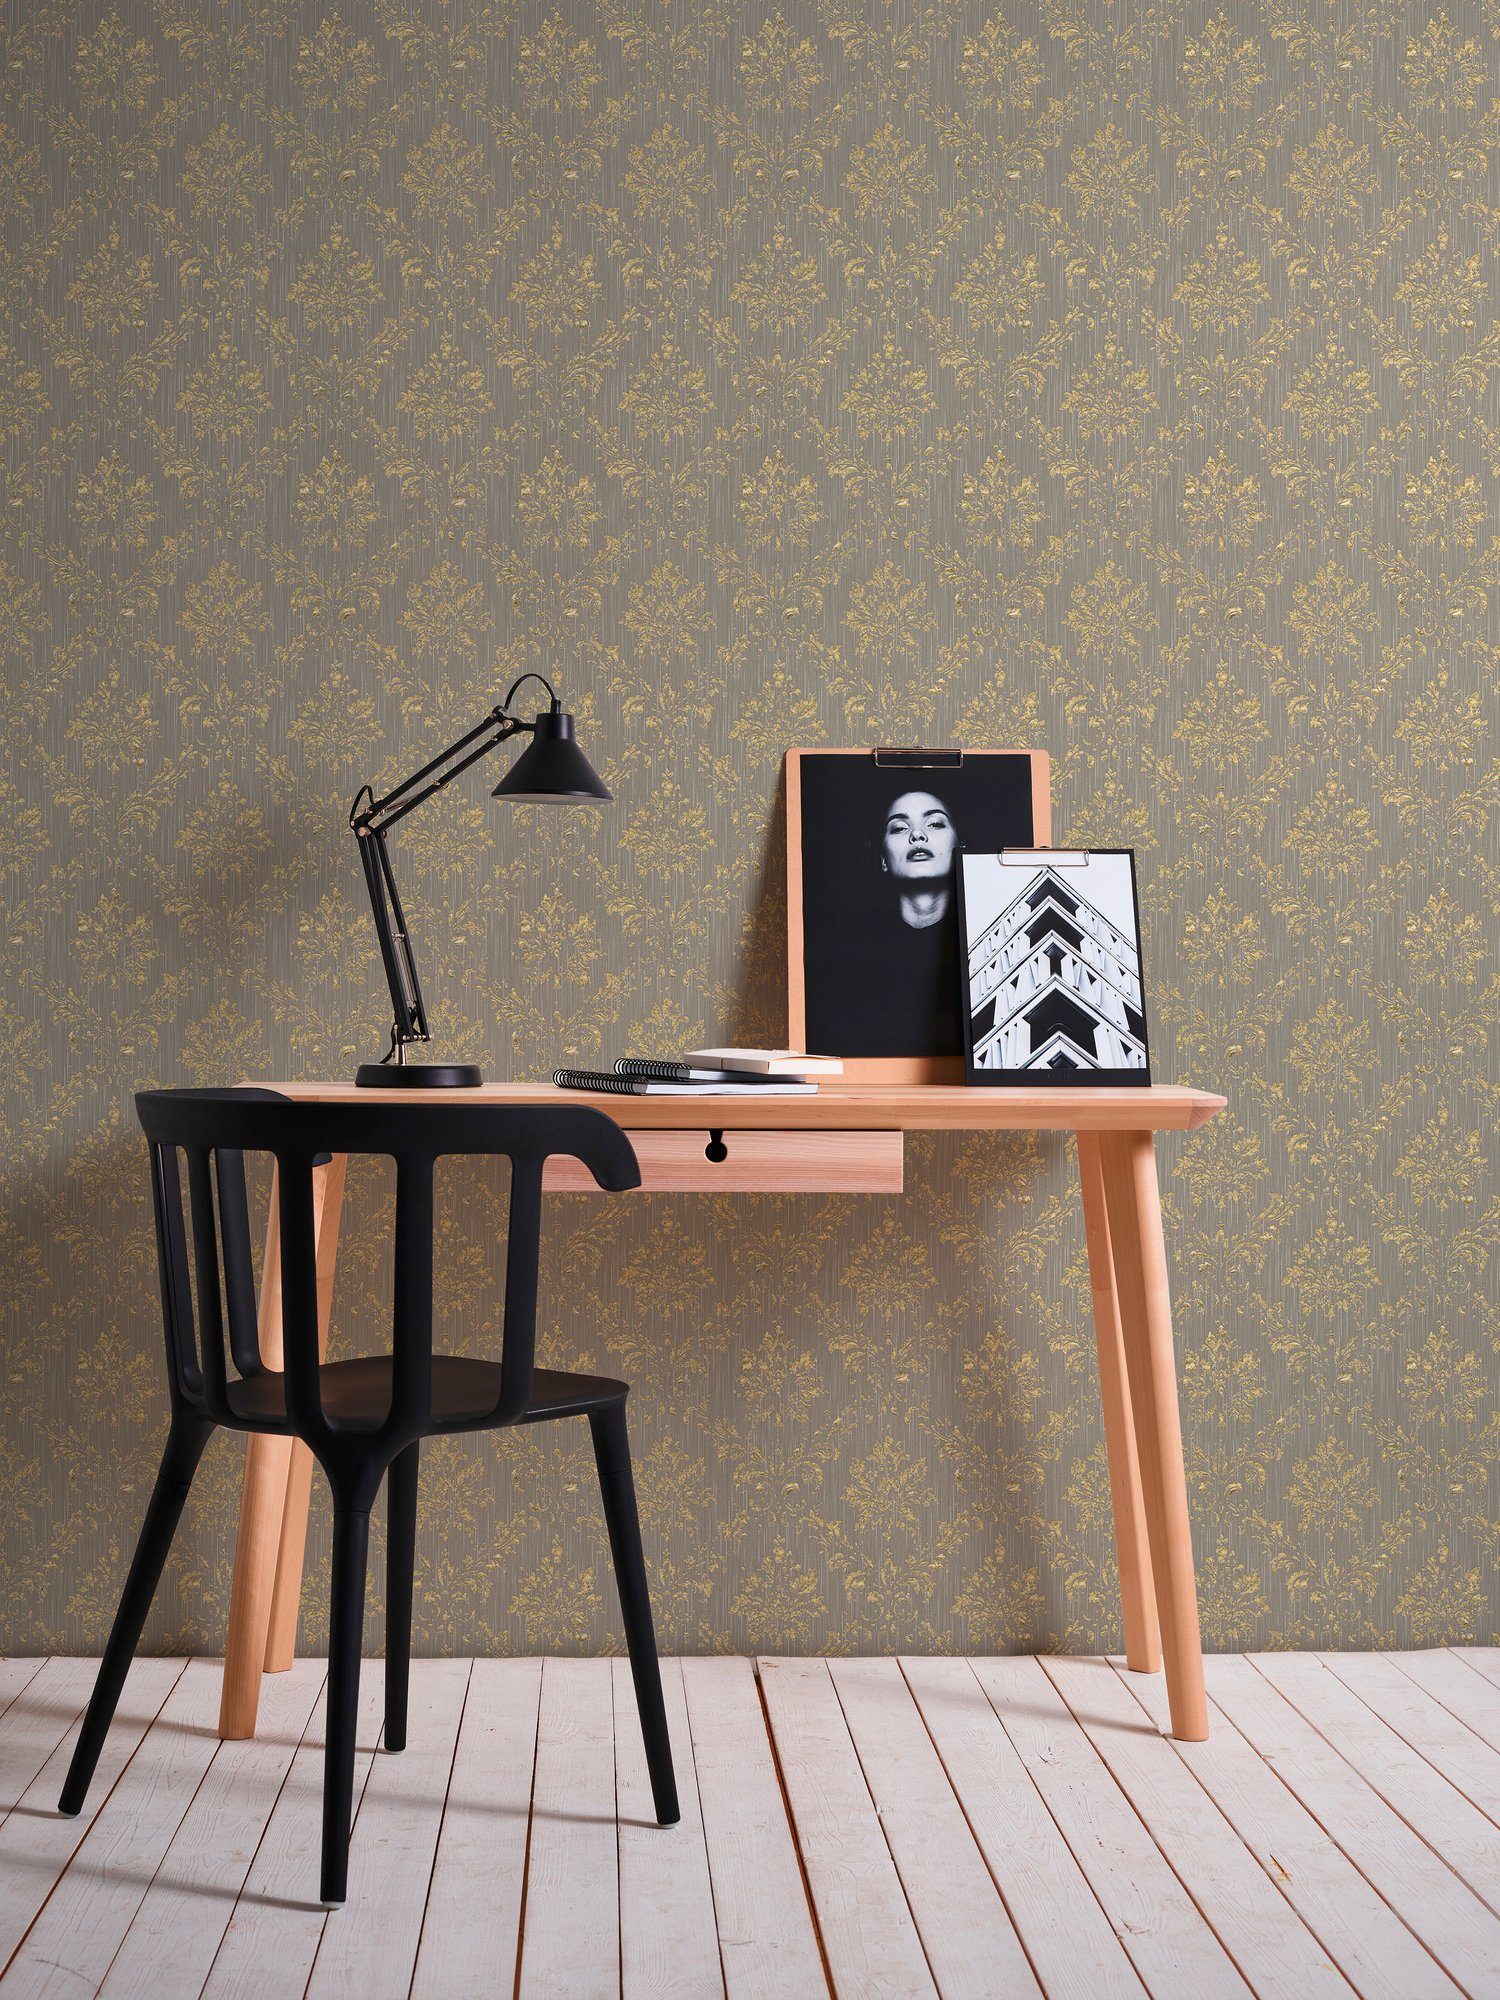 A.S. Création Barock, Silk, samtig, Paper Tapete matt, Ornament gold/beige Textiltapete Metallic glänzend, Architects Barock